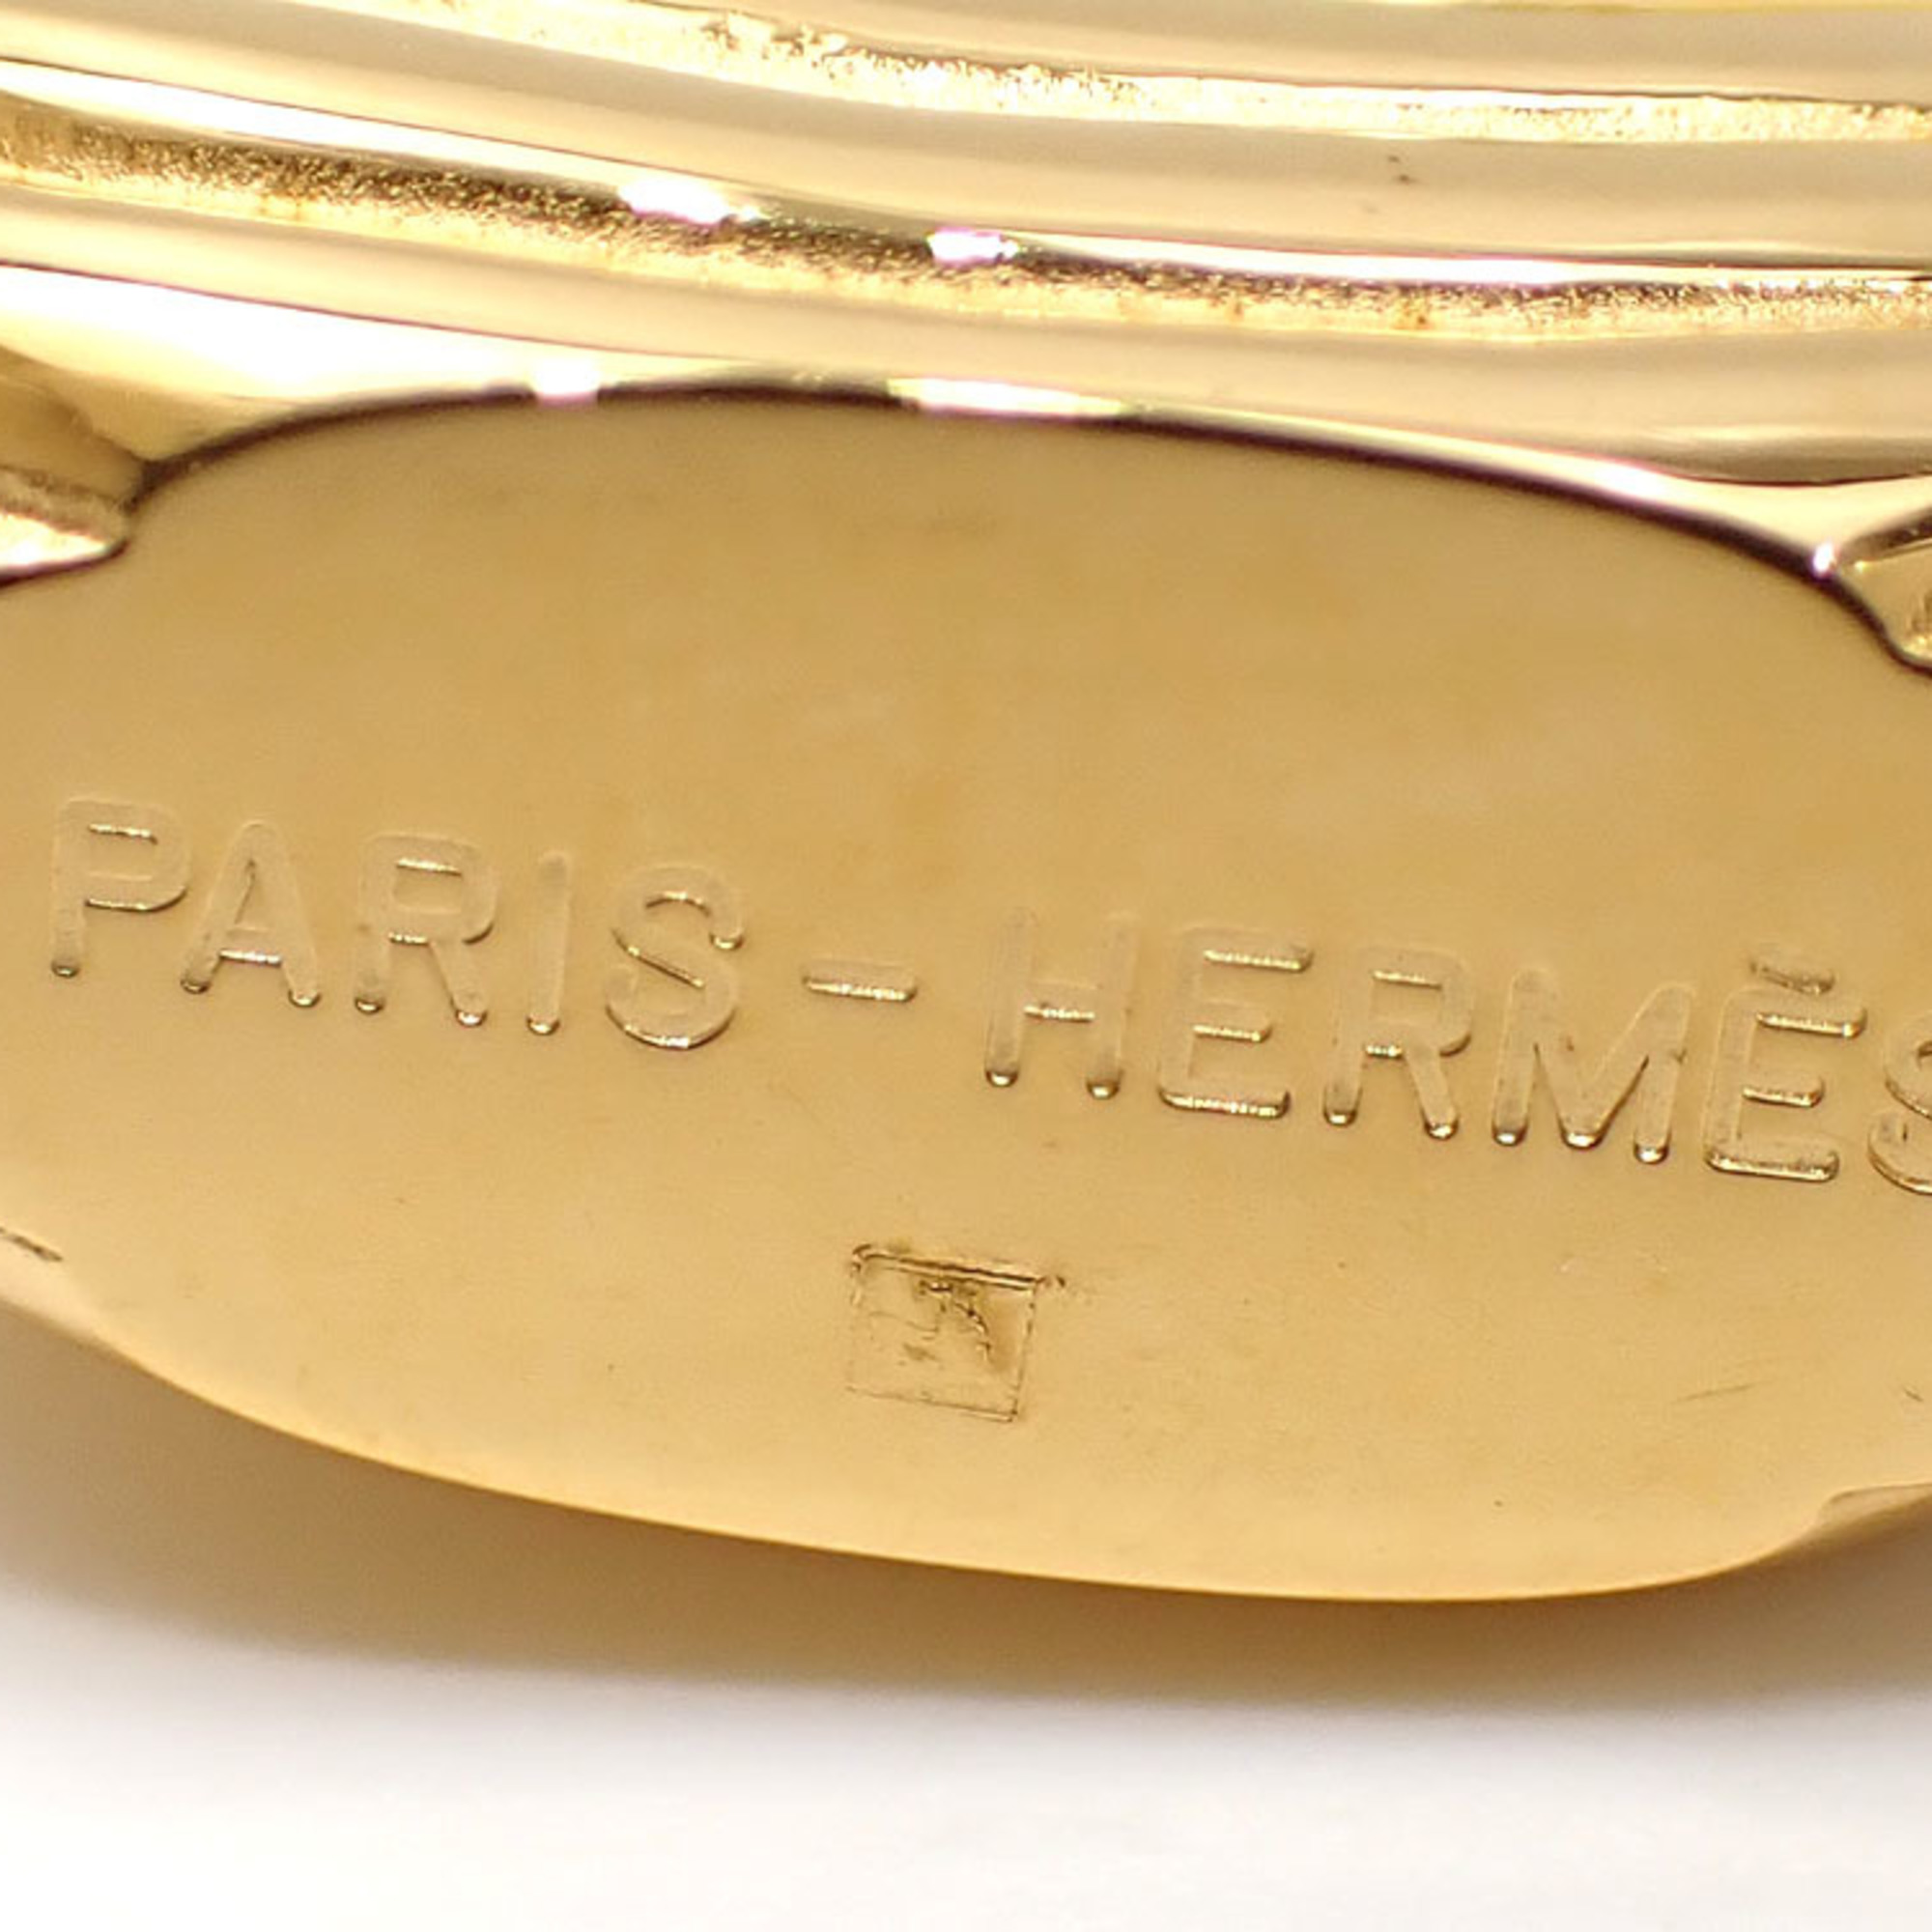 Hermes Padlock Charm Gold GP HERMES Bag Paris Air Wind L'air de Ship Women Men Unisex